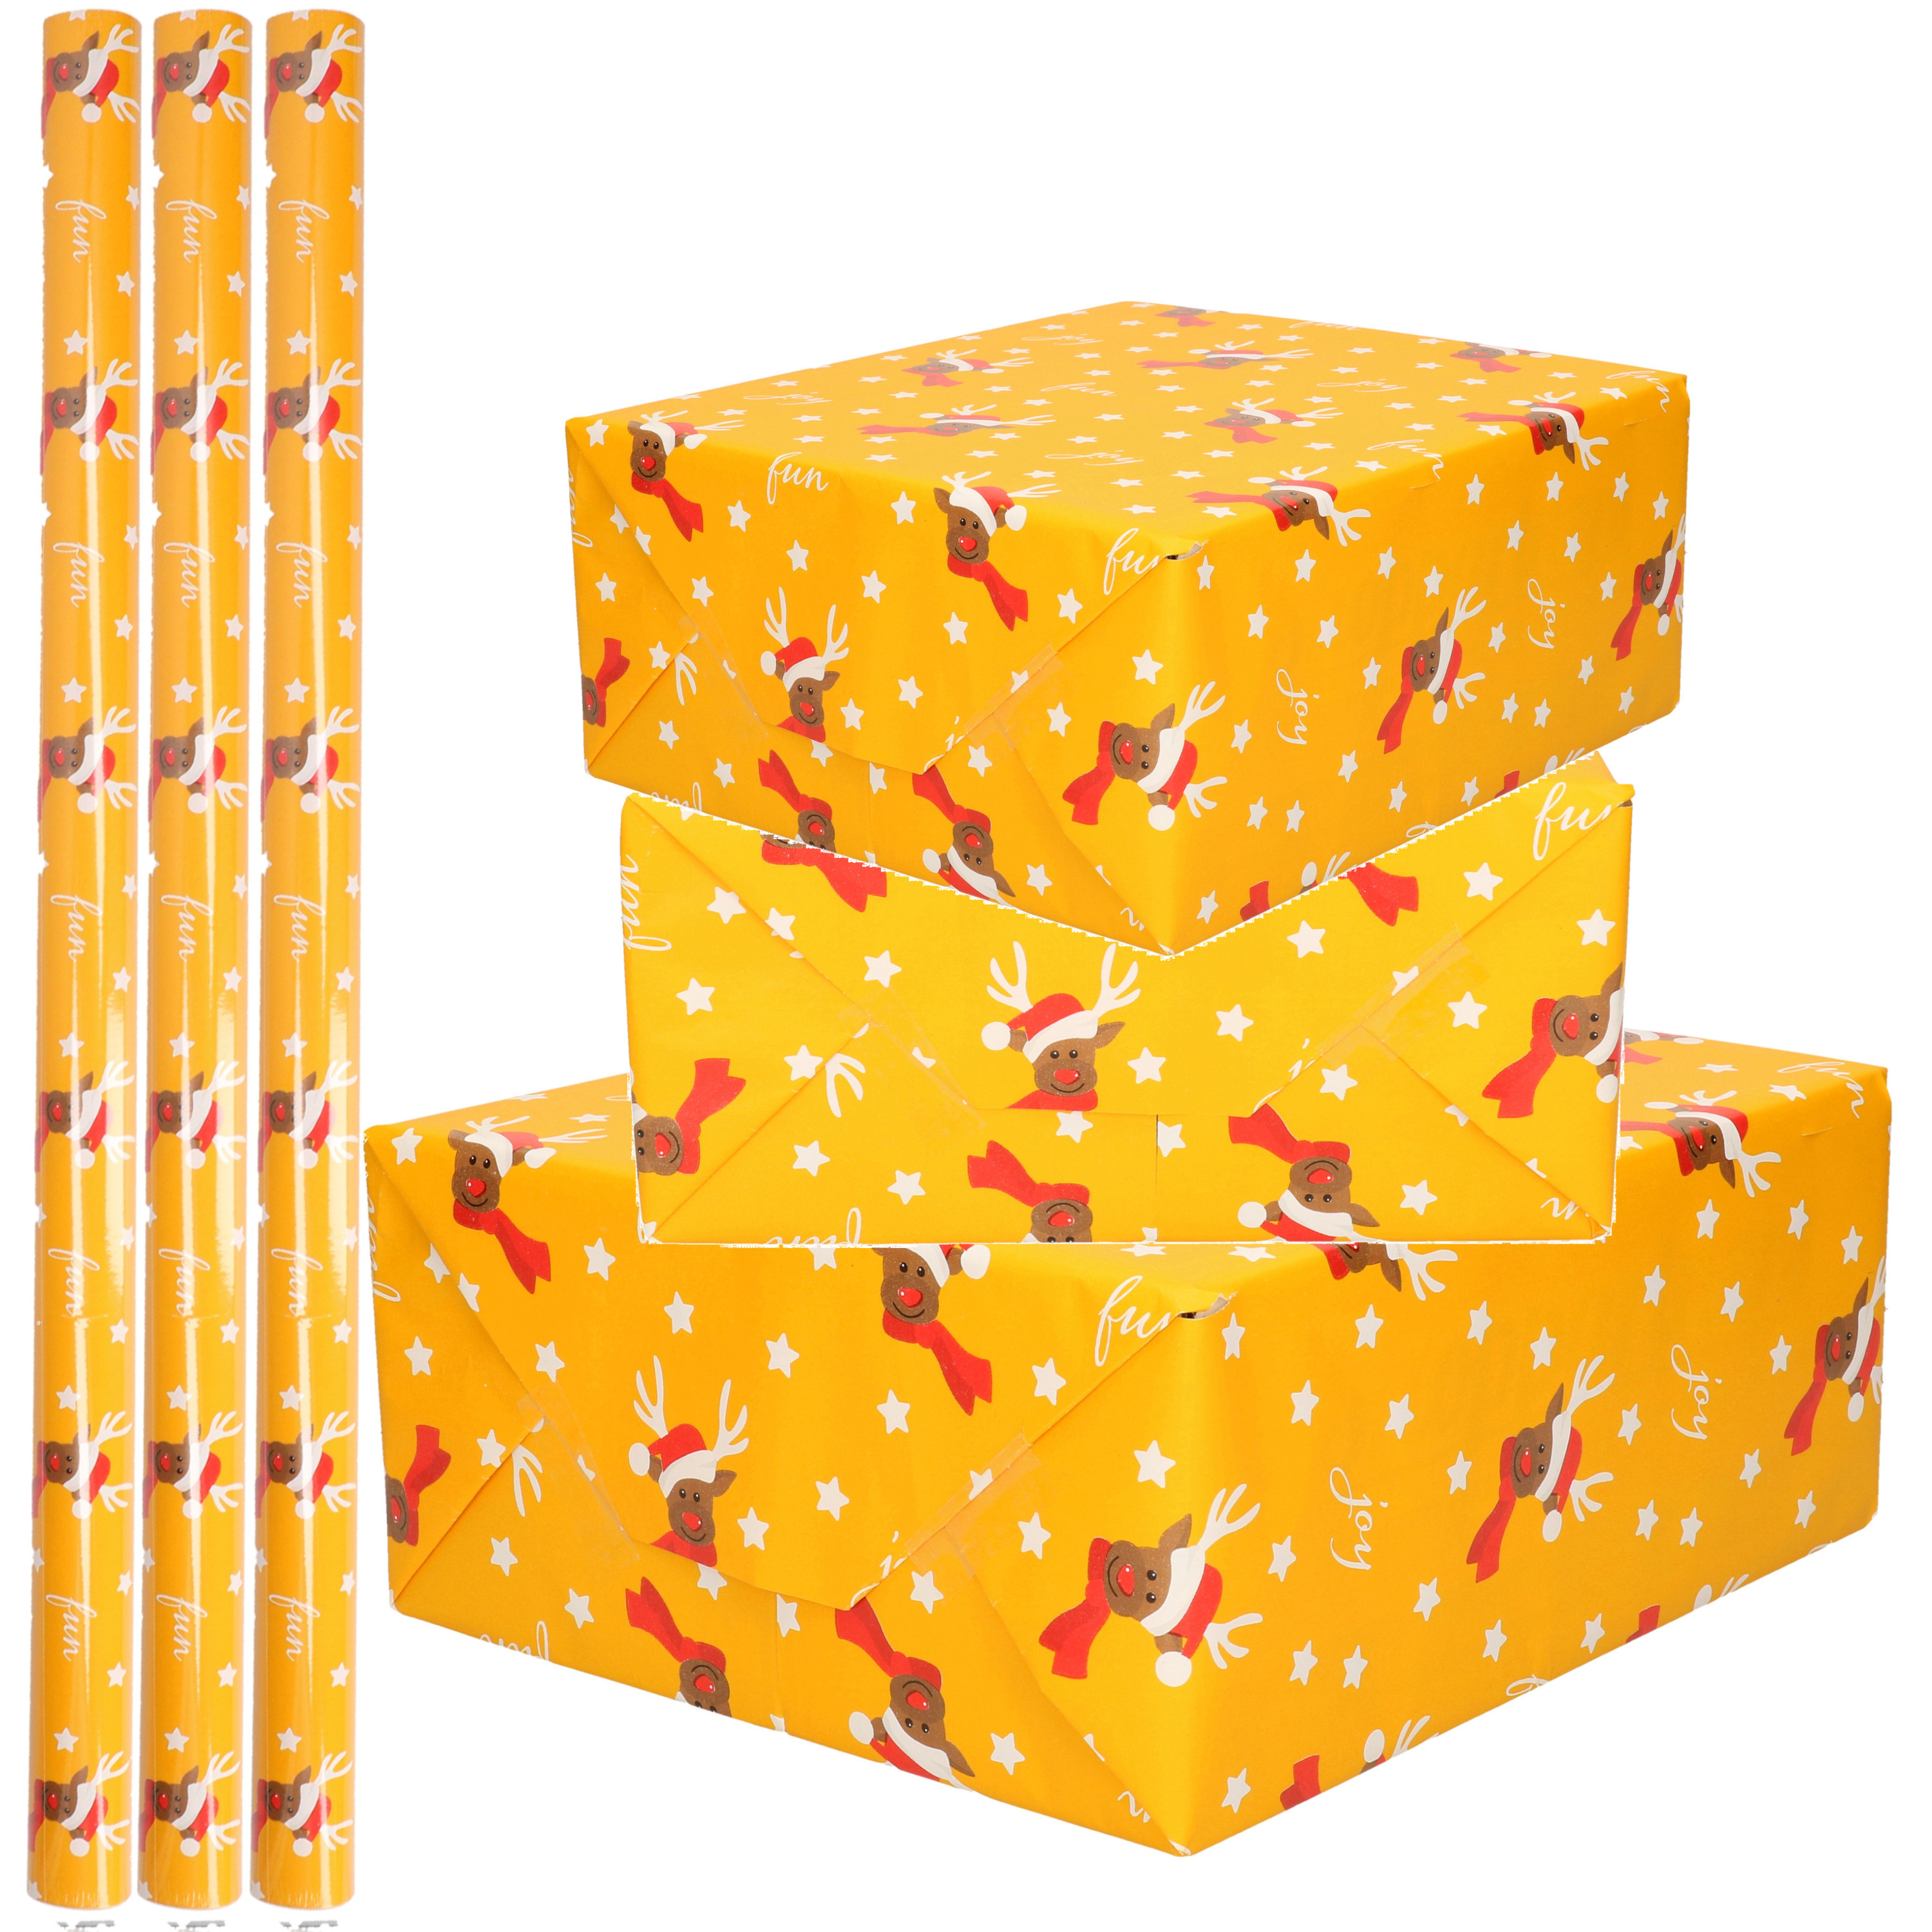 4x Rollen Kerst inpakpapier/cadeaupapier oker geel/rendieren fun 2,5 x 0,7 meter